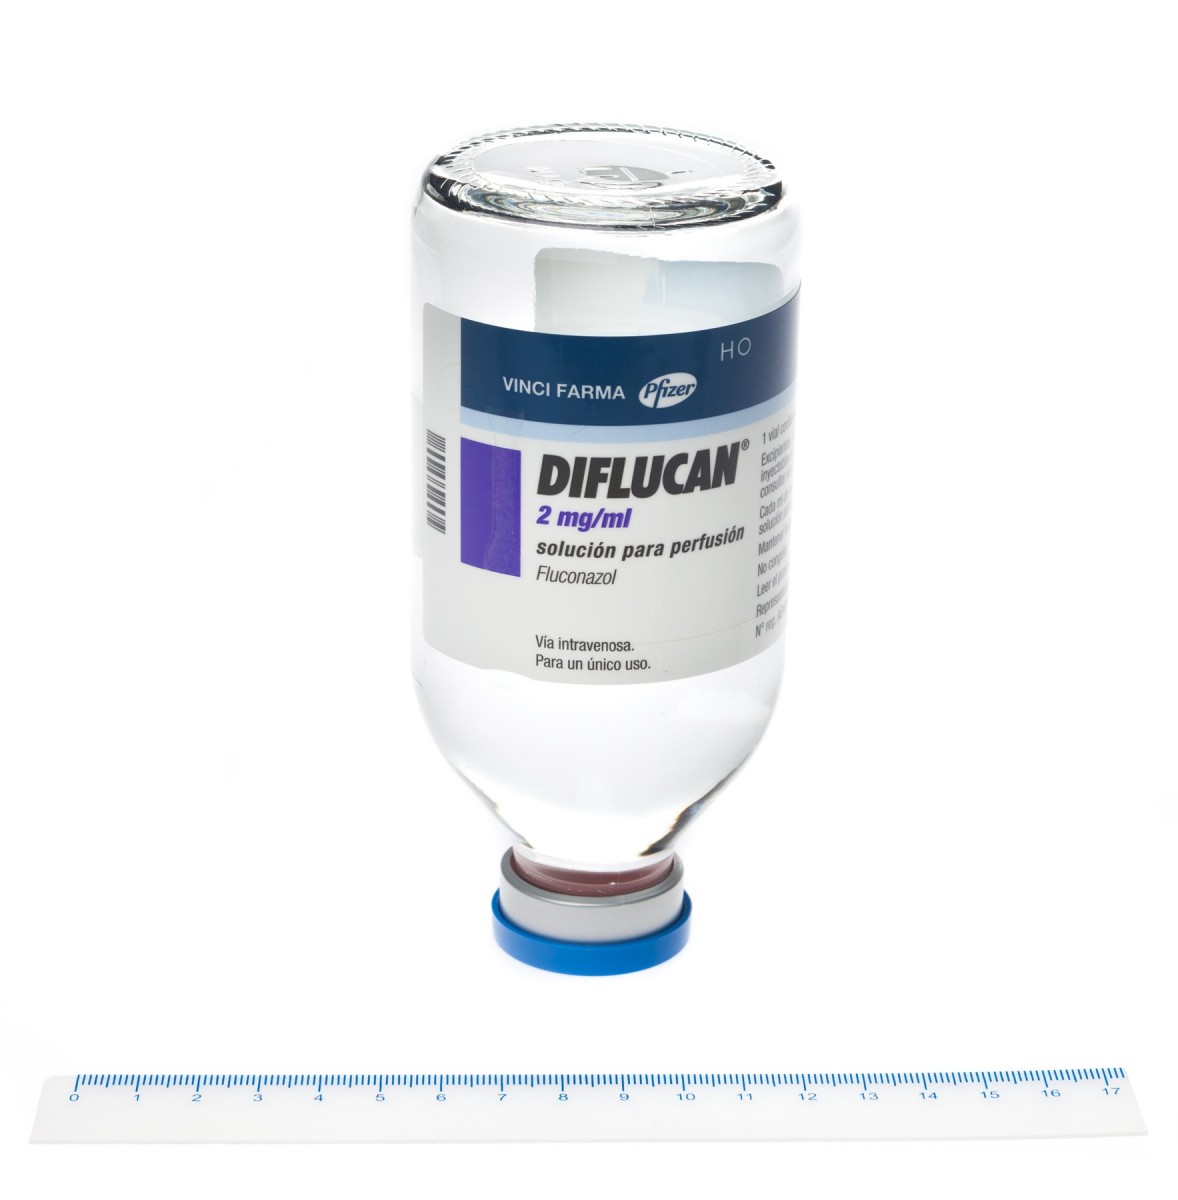 DIFLUCAN 2 mg/ml SOLUCION PARA PERFUSION , 1 vial de 50 ml fotografía de la forma farmacéutica.